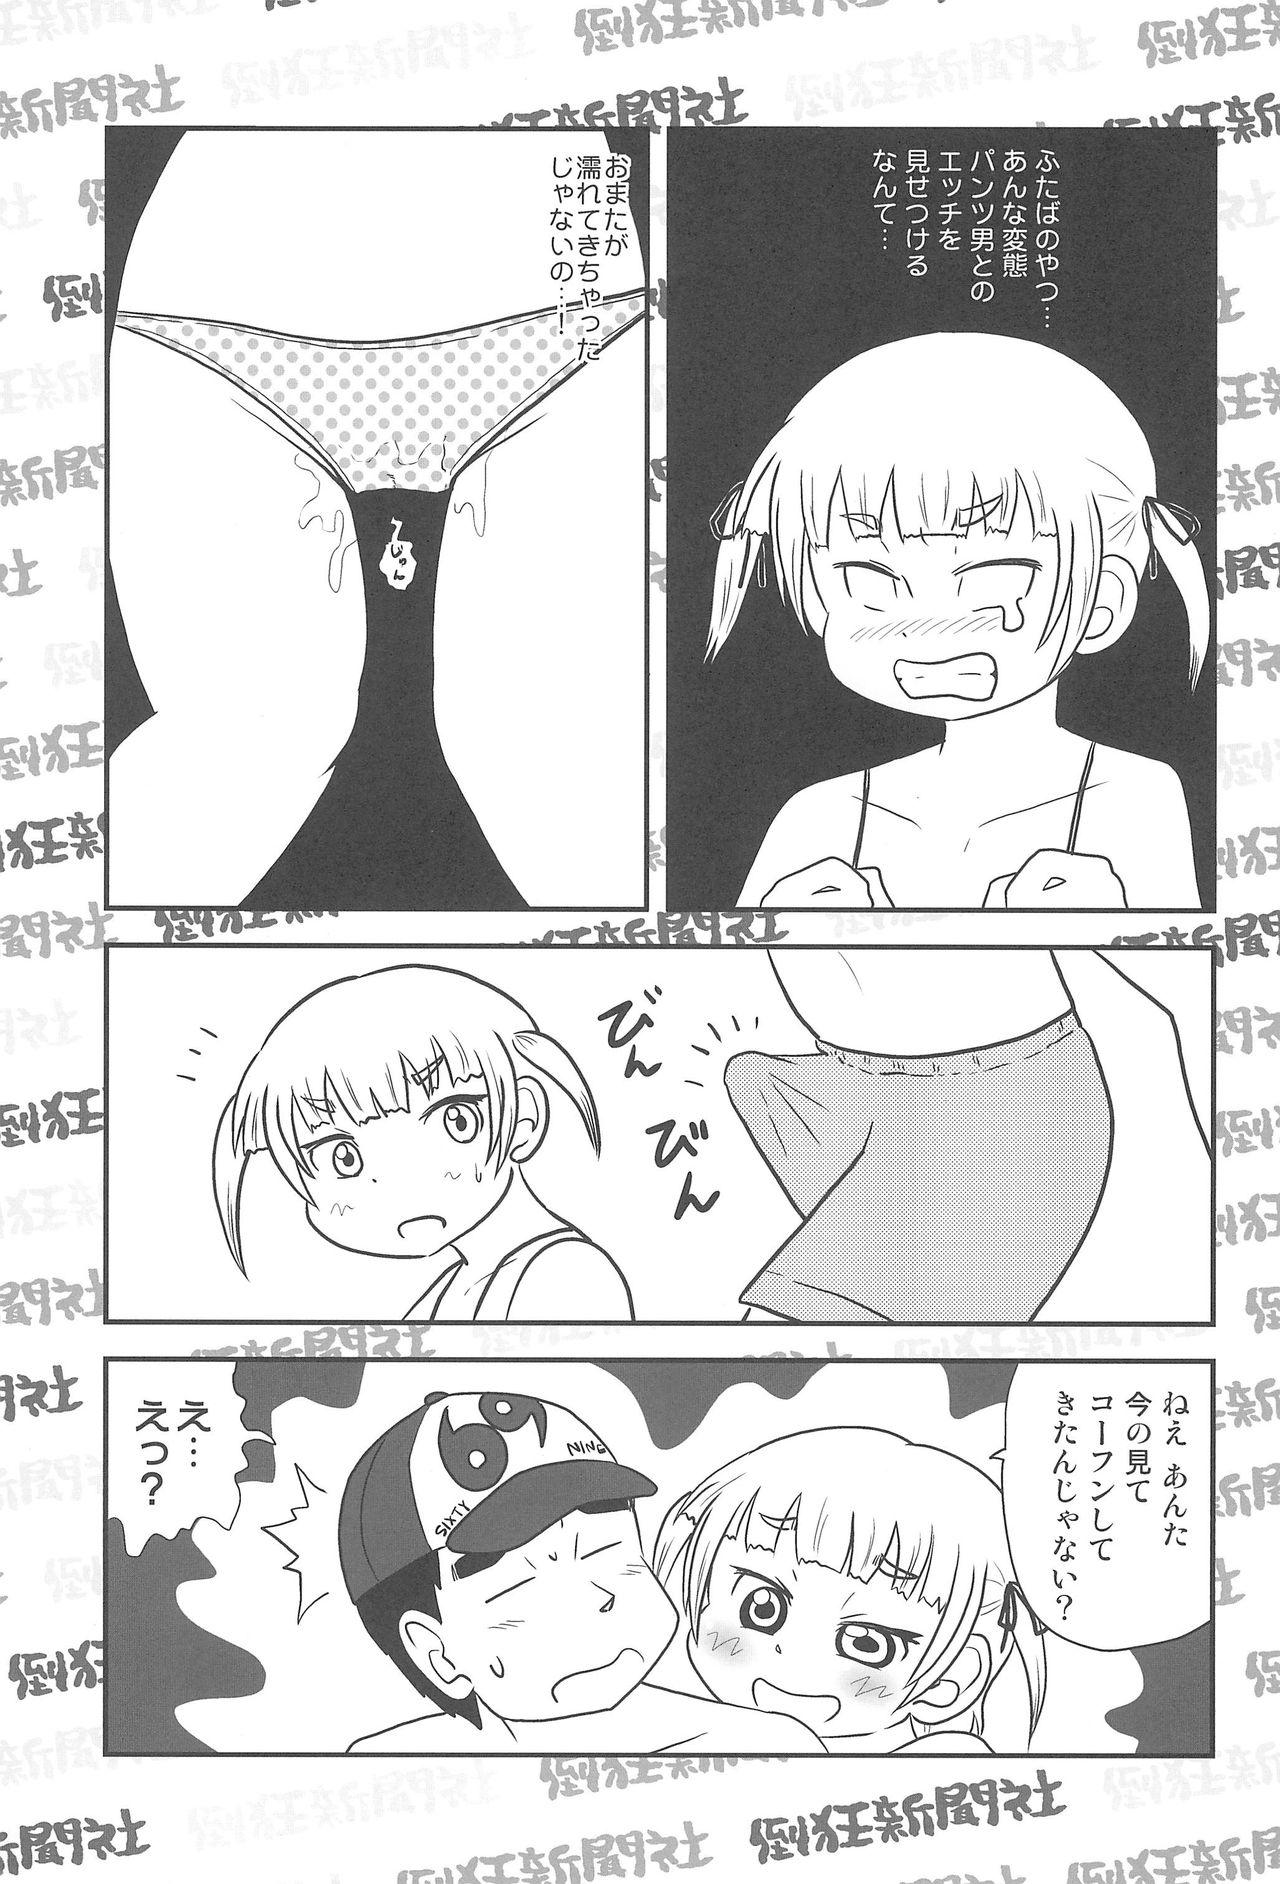 Raw Mesubuta Summer - Mitsudomoe Mulata - Page 11